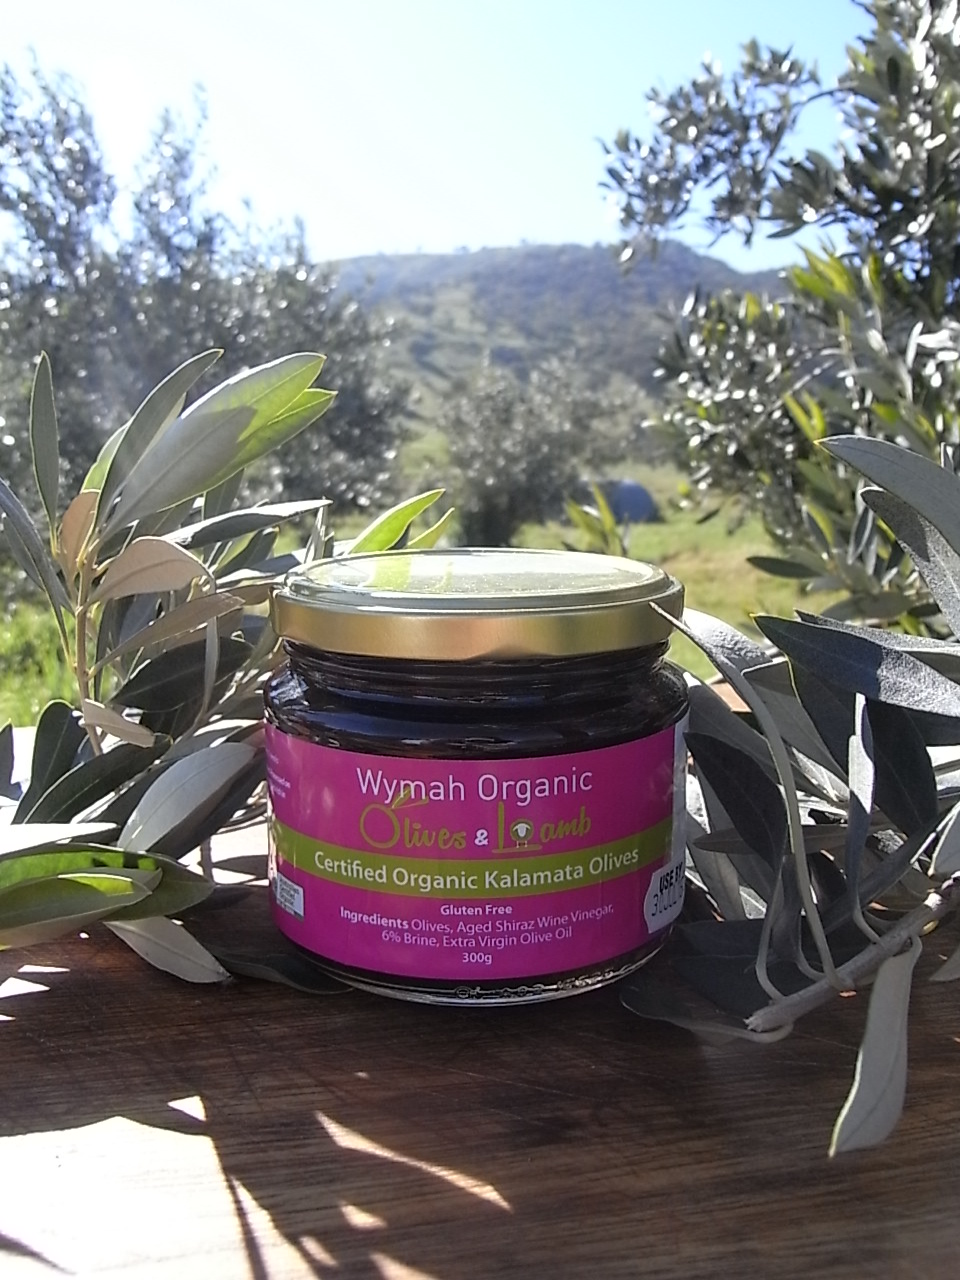 Wymah Organic Olives and Lamb | food | 2159 Wymah Rd, Wymah NSW 2640, Australia | 0419556532 OR +61 419 556 532